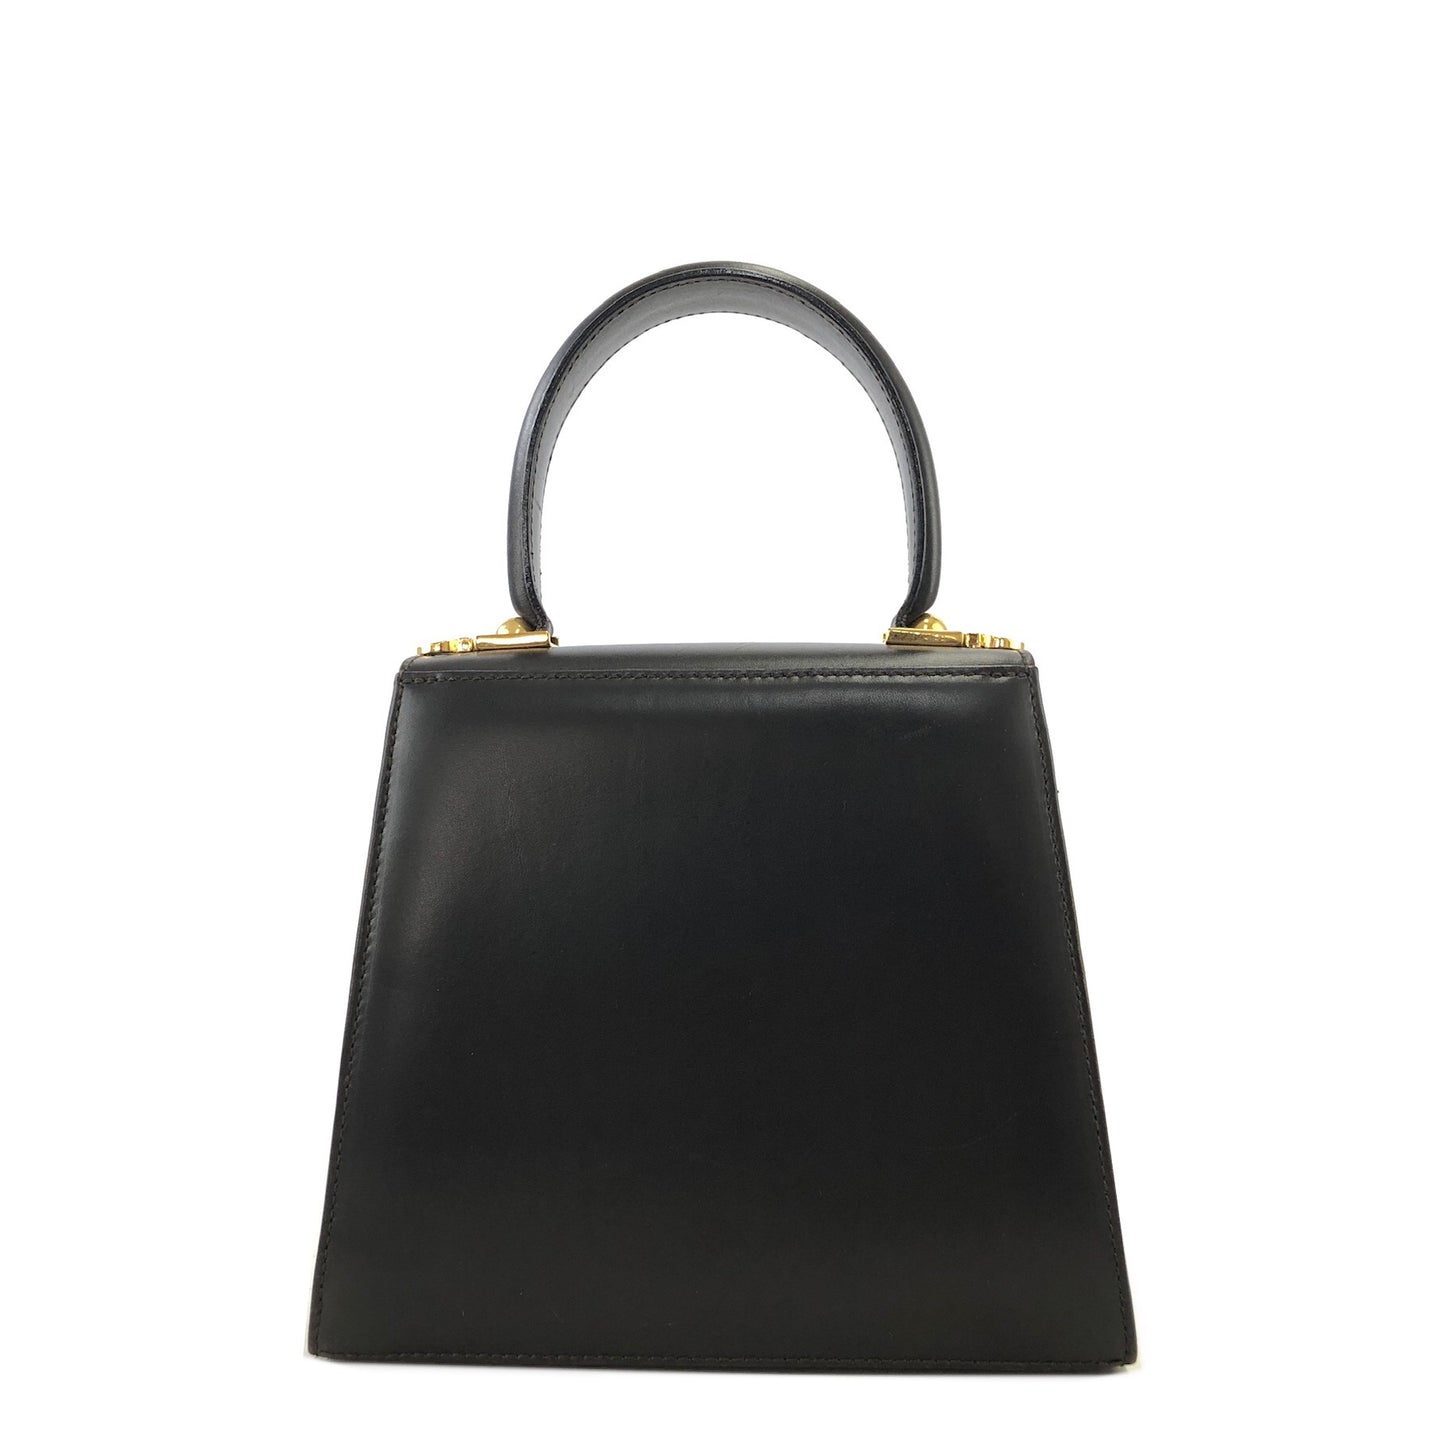 Salvatore Ferragamo Gancini Leather Two-way Top Handle Handbag Shoulder bag Brown Vintage 5nrmgt